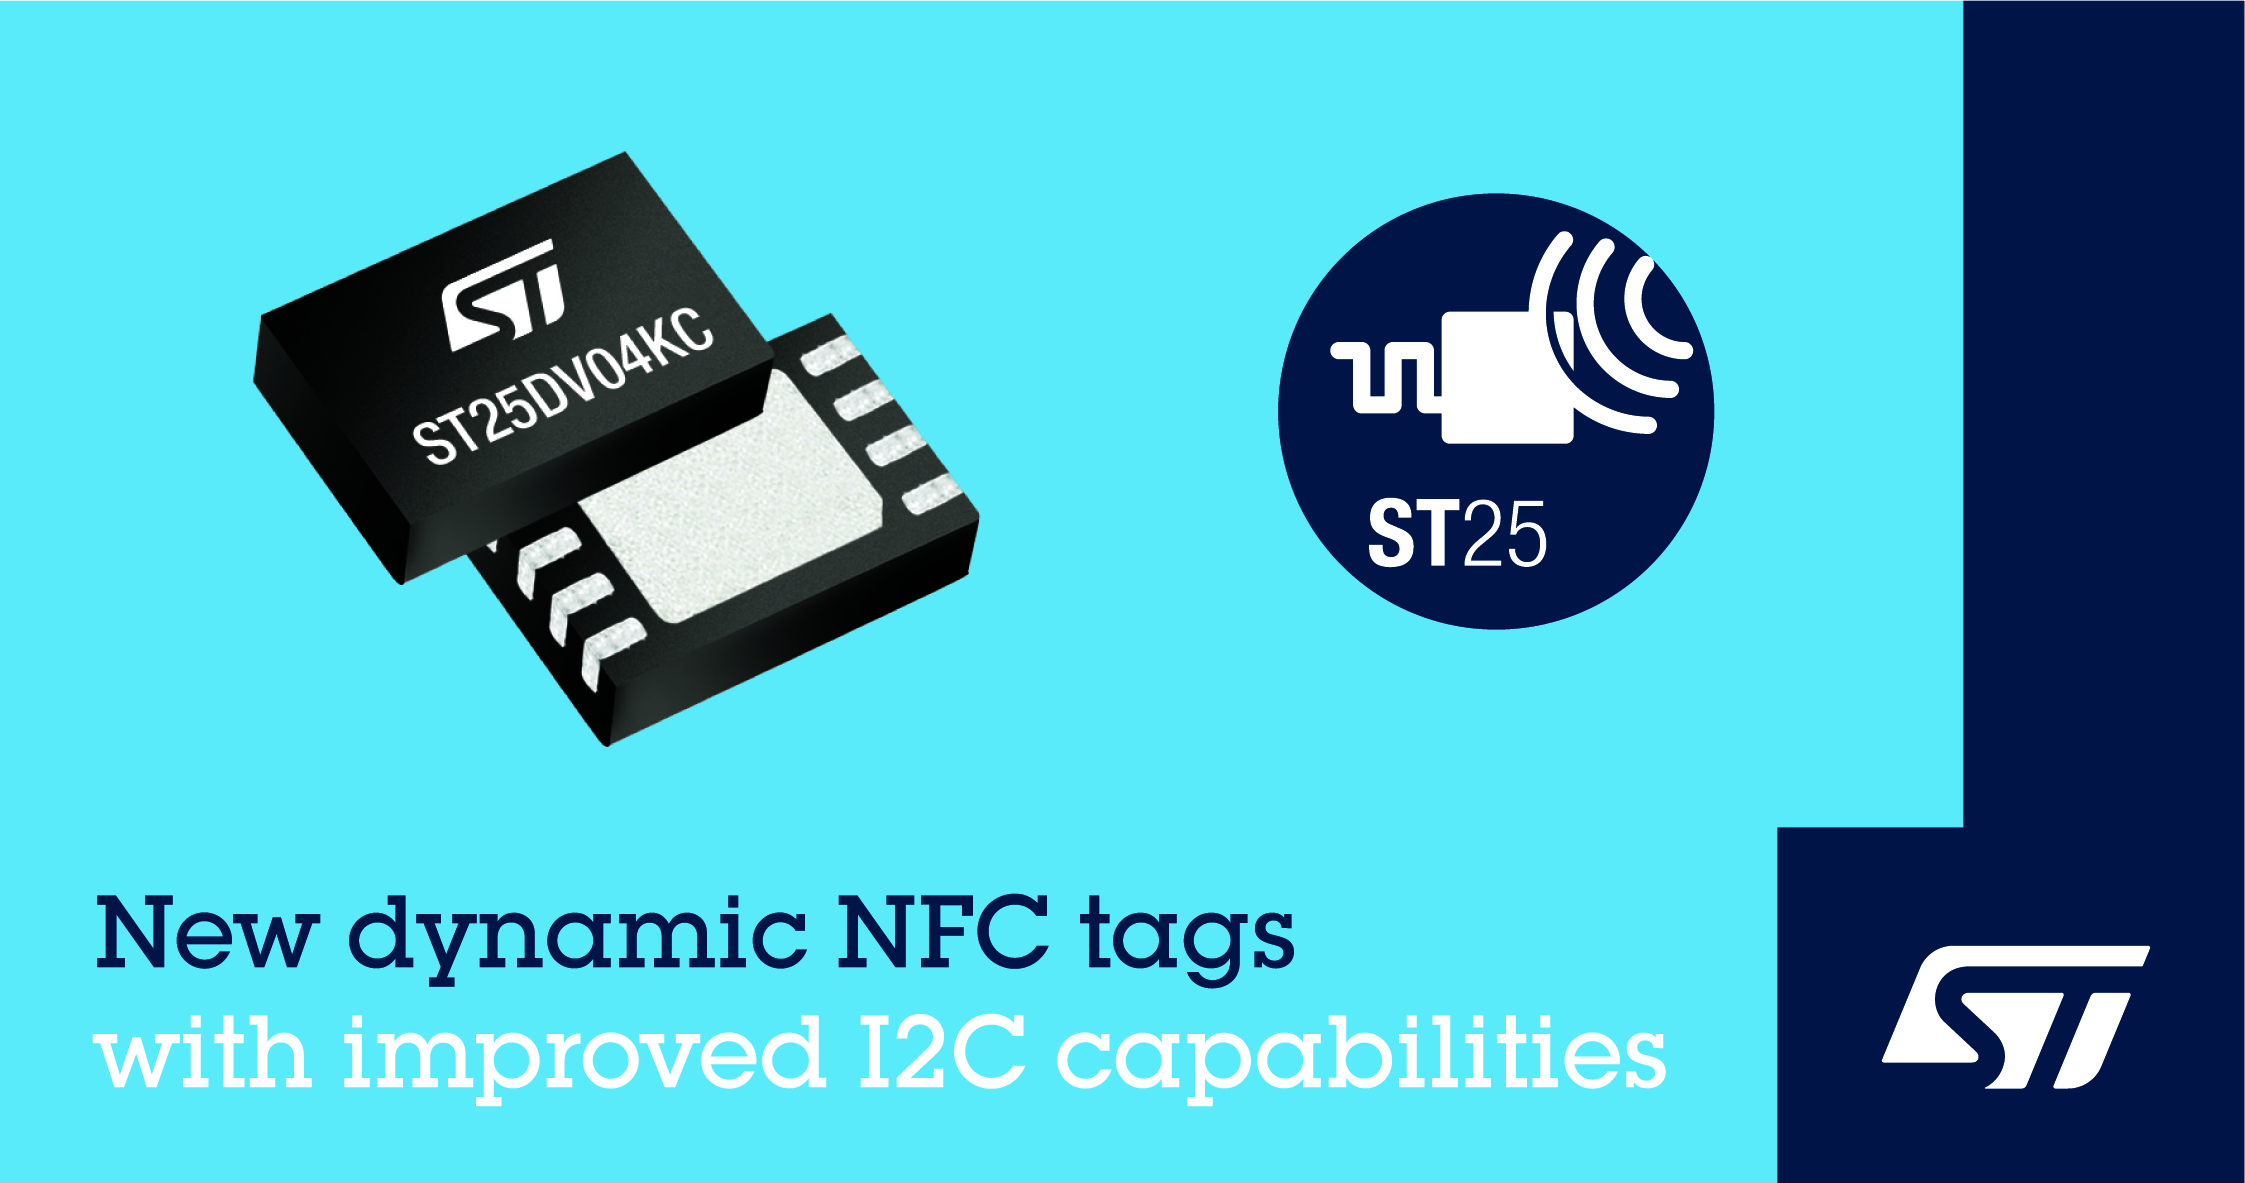 意法半导体增强 ST25DV 双接口 NFC 标签性能